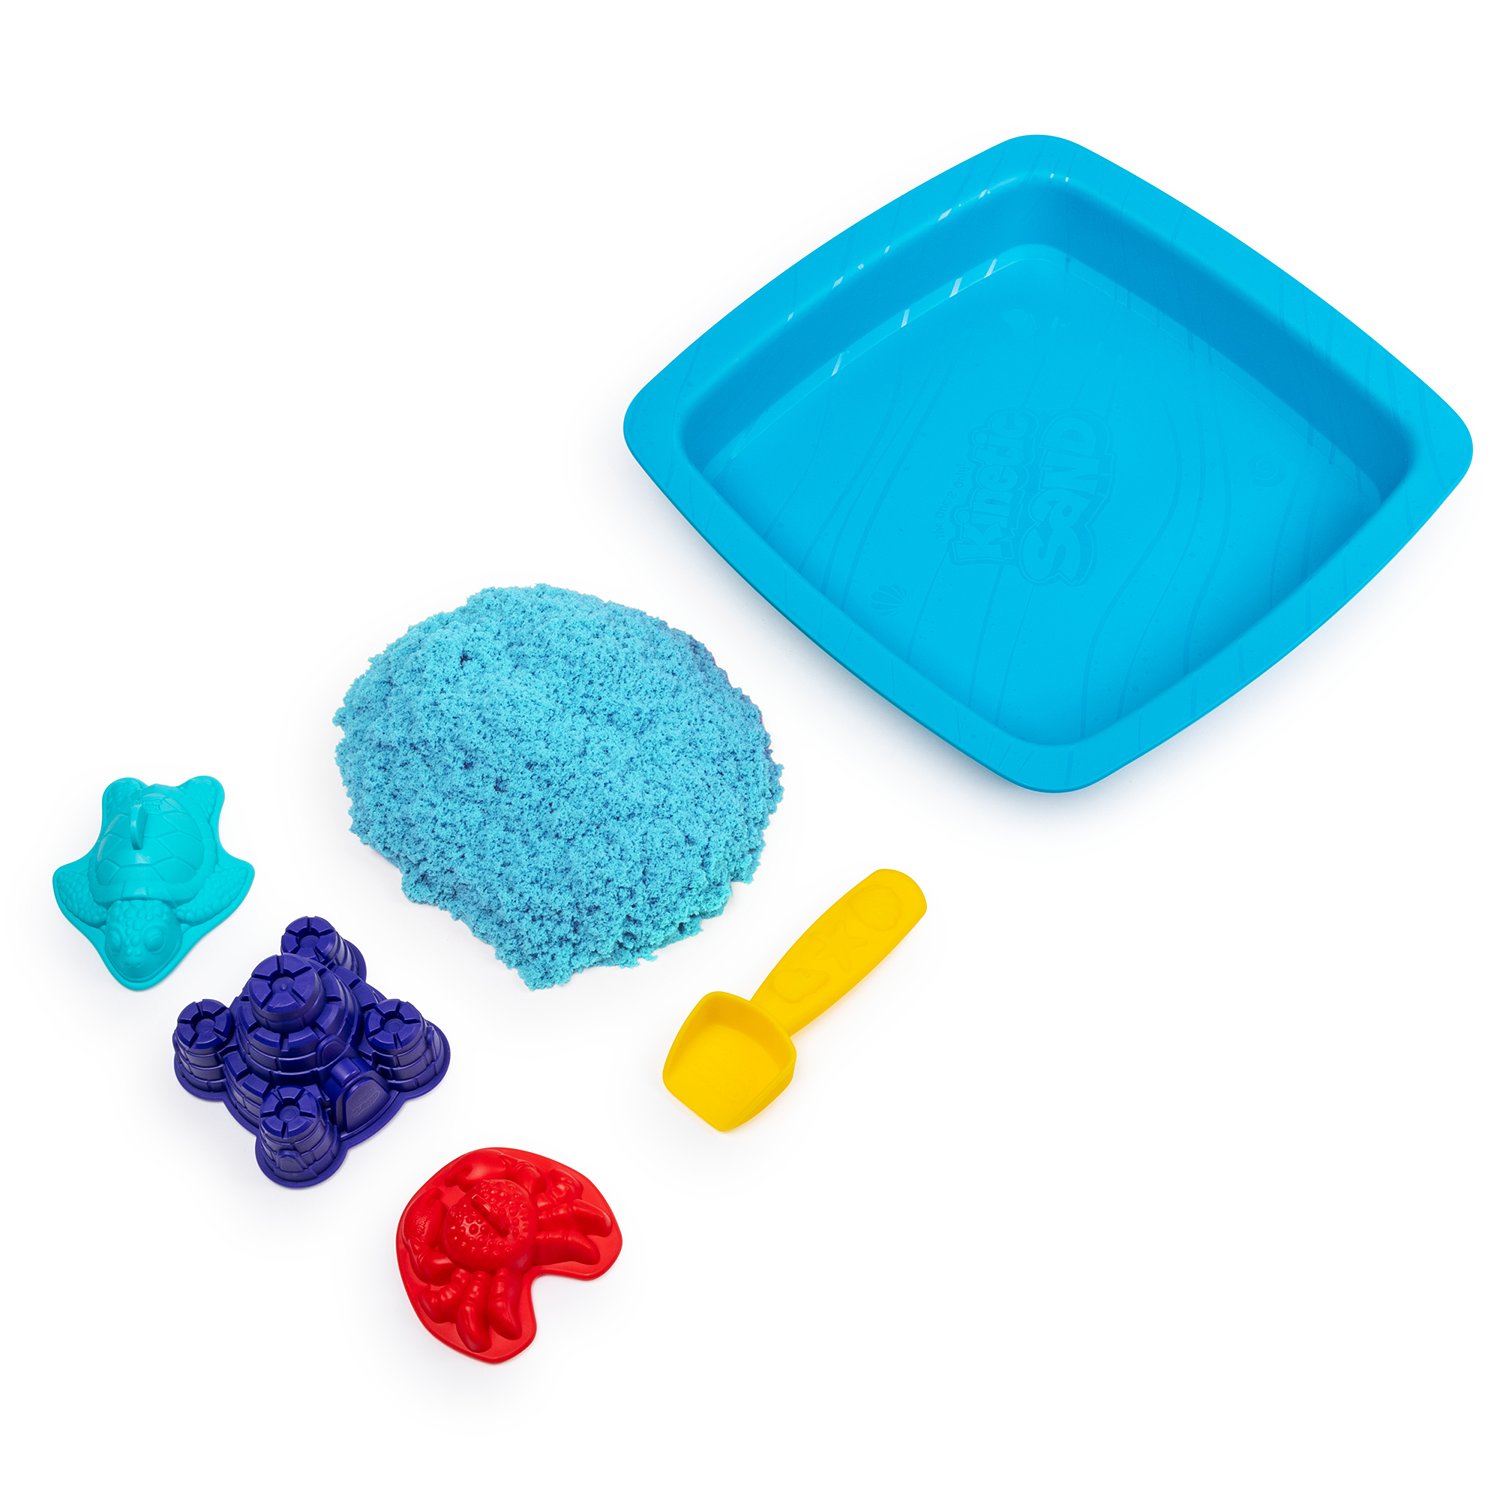 Песок кинетический Kinetic Sand с коробкой и инструментами 454г Blue 6024397/20106636